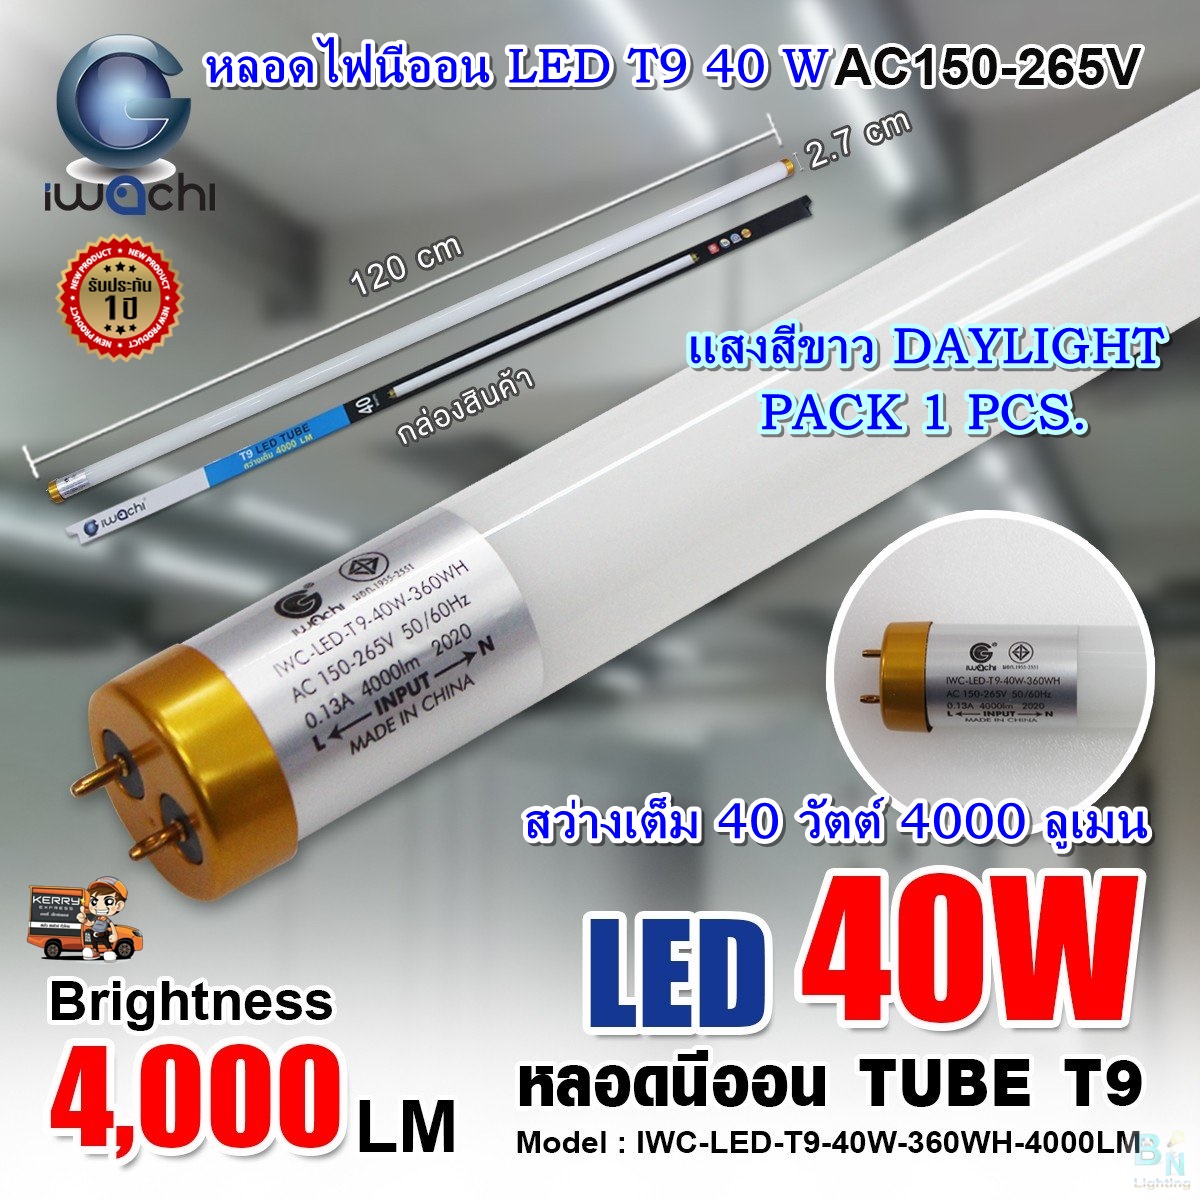 หลอดไฟนีออน LED T9 หลอดไฟ LED หลอดประหยัดไฟ LED T9 40W IWACHI ขั้วสีทอง หลอด LED ยาว หลอดไฟยาว (แสงสีขาว DAYLIGHT)(แพ็ค 1 หลอด)